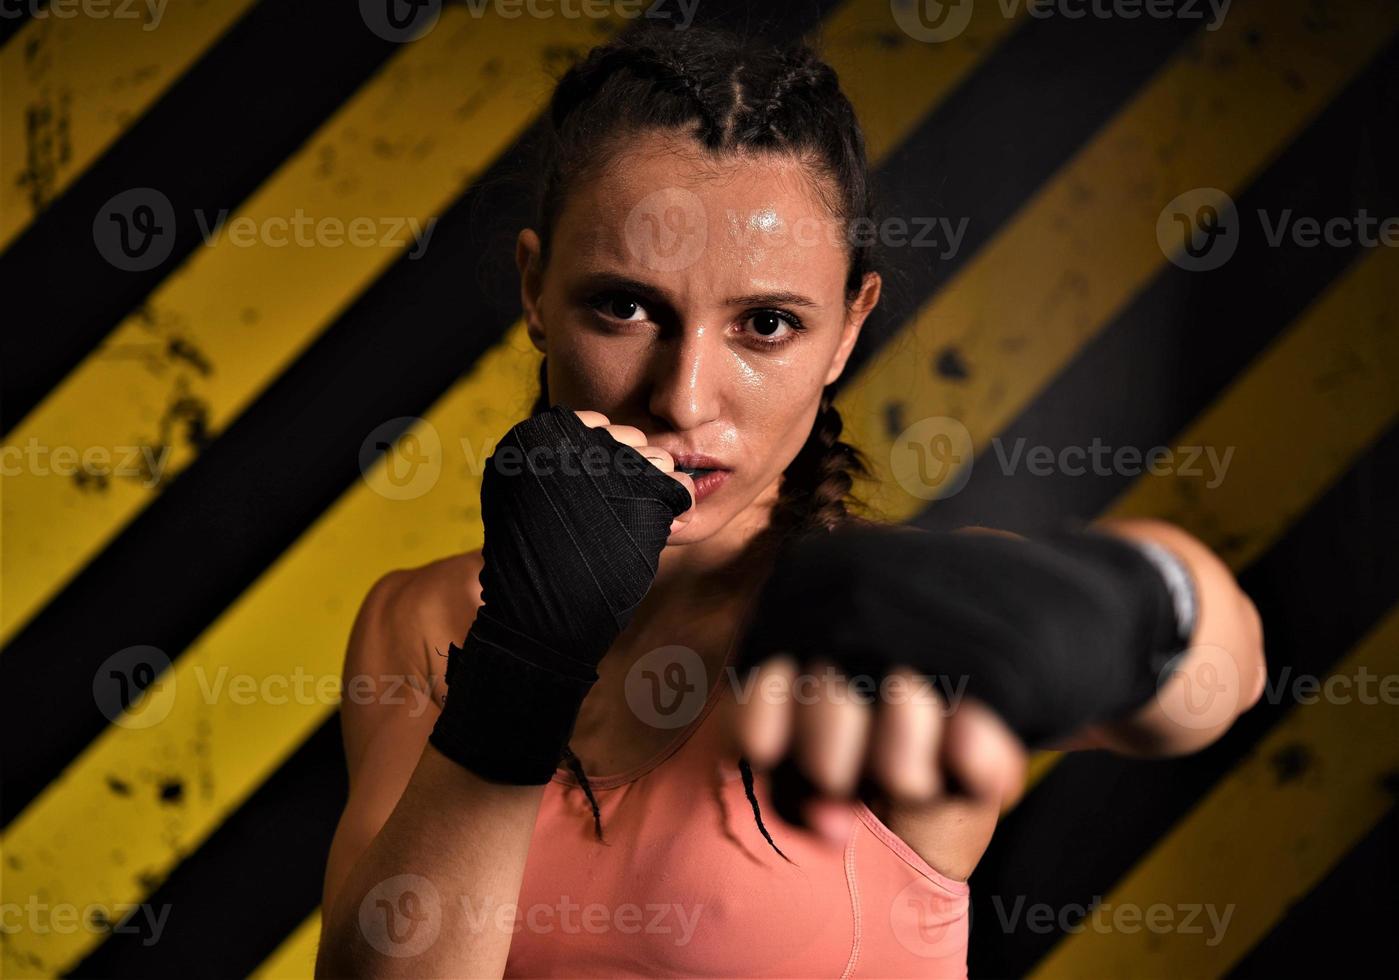 mma mujeres combatiente duro polluelo boxeador puñetazo pose bonita ejercicio formación cruzar atleta foto